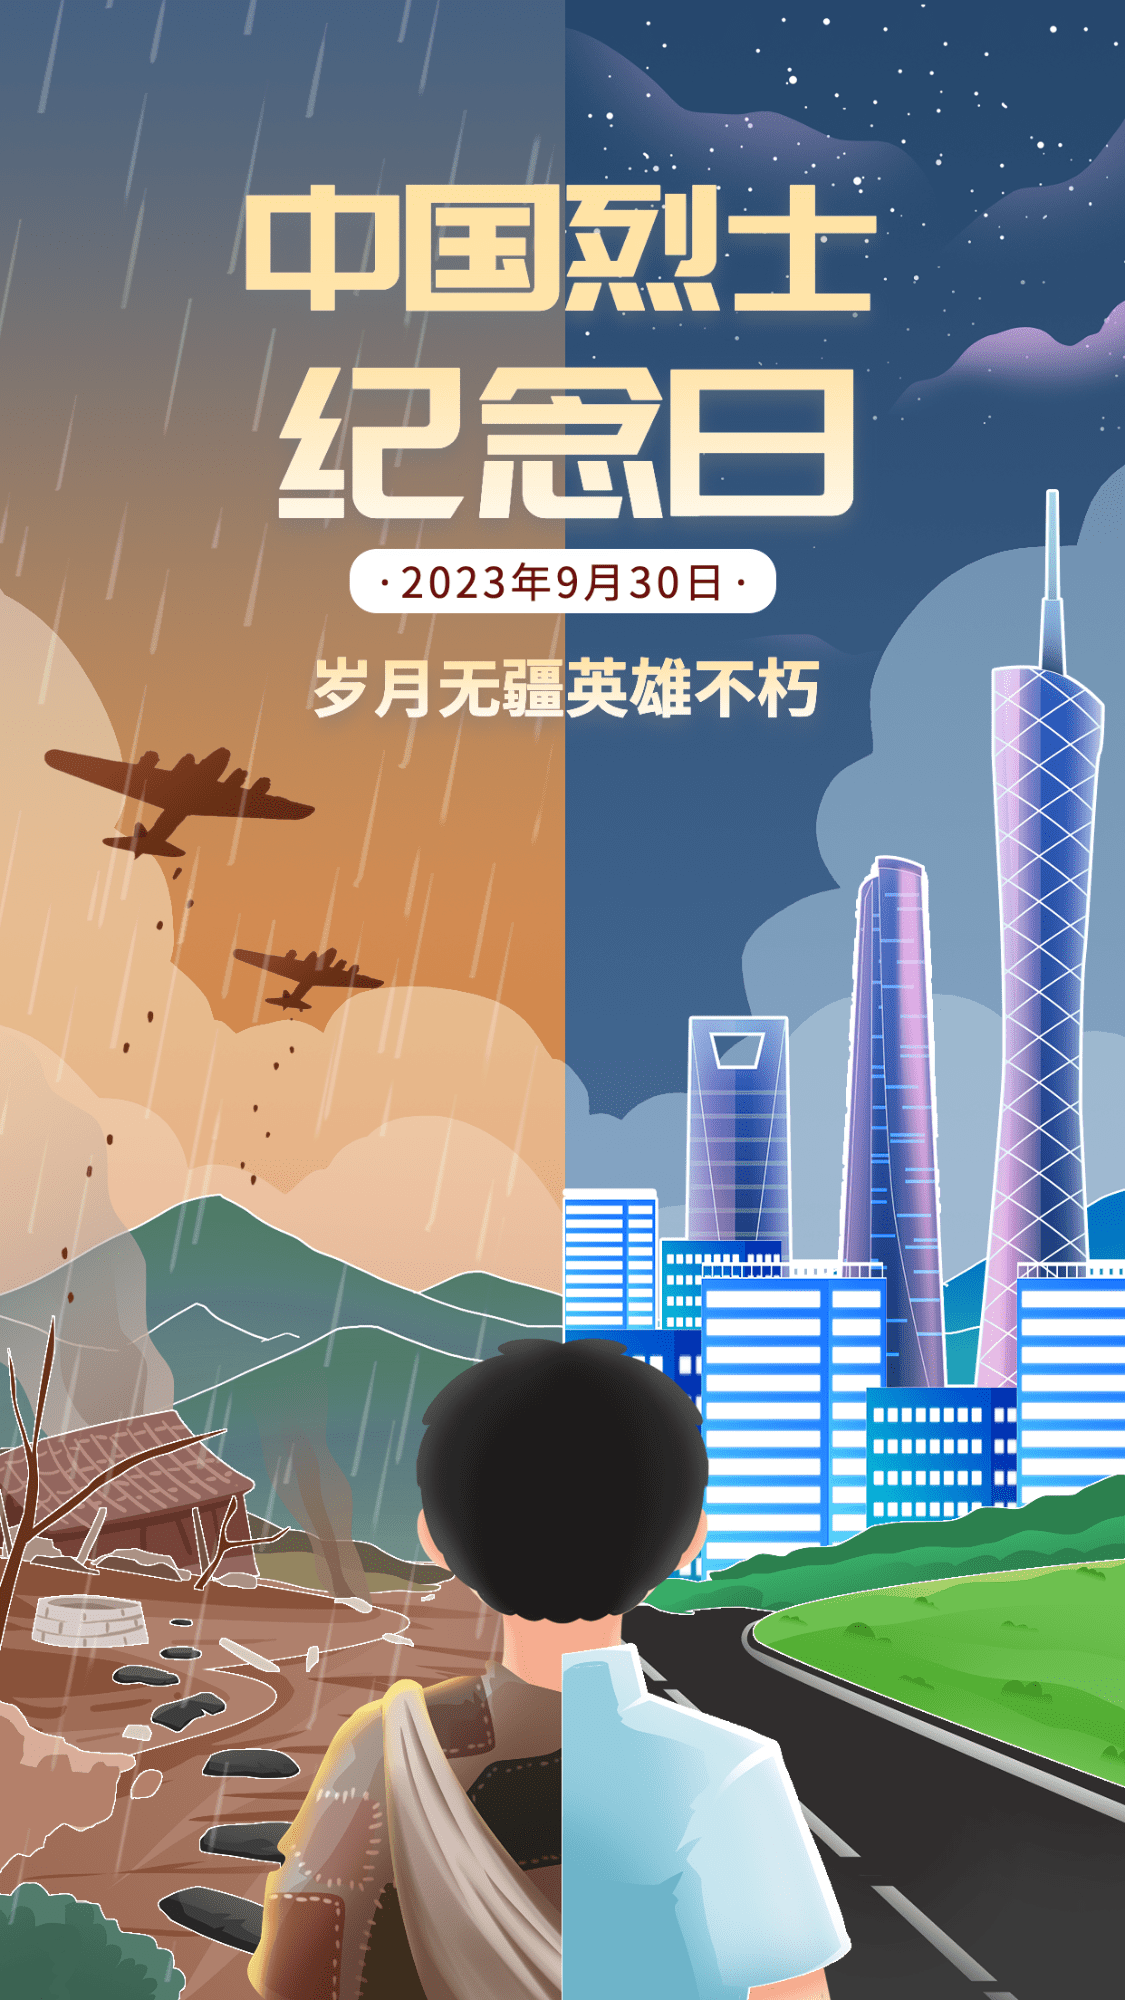 中国烈士纪念日节日宣传插画手机海报